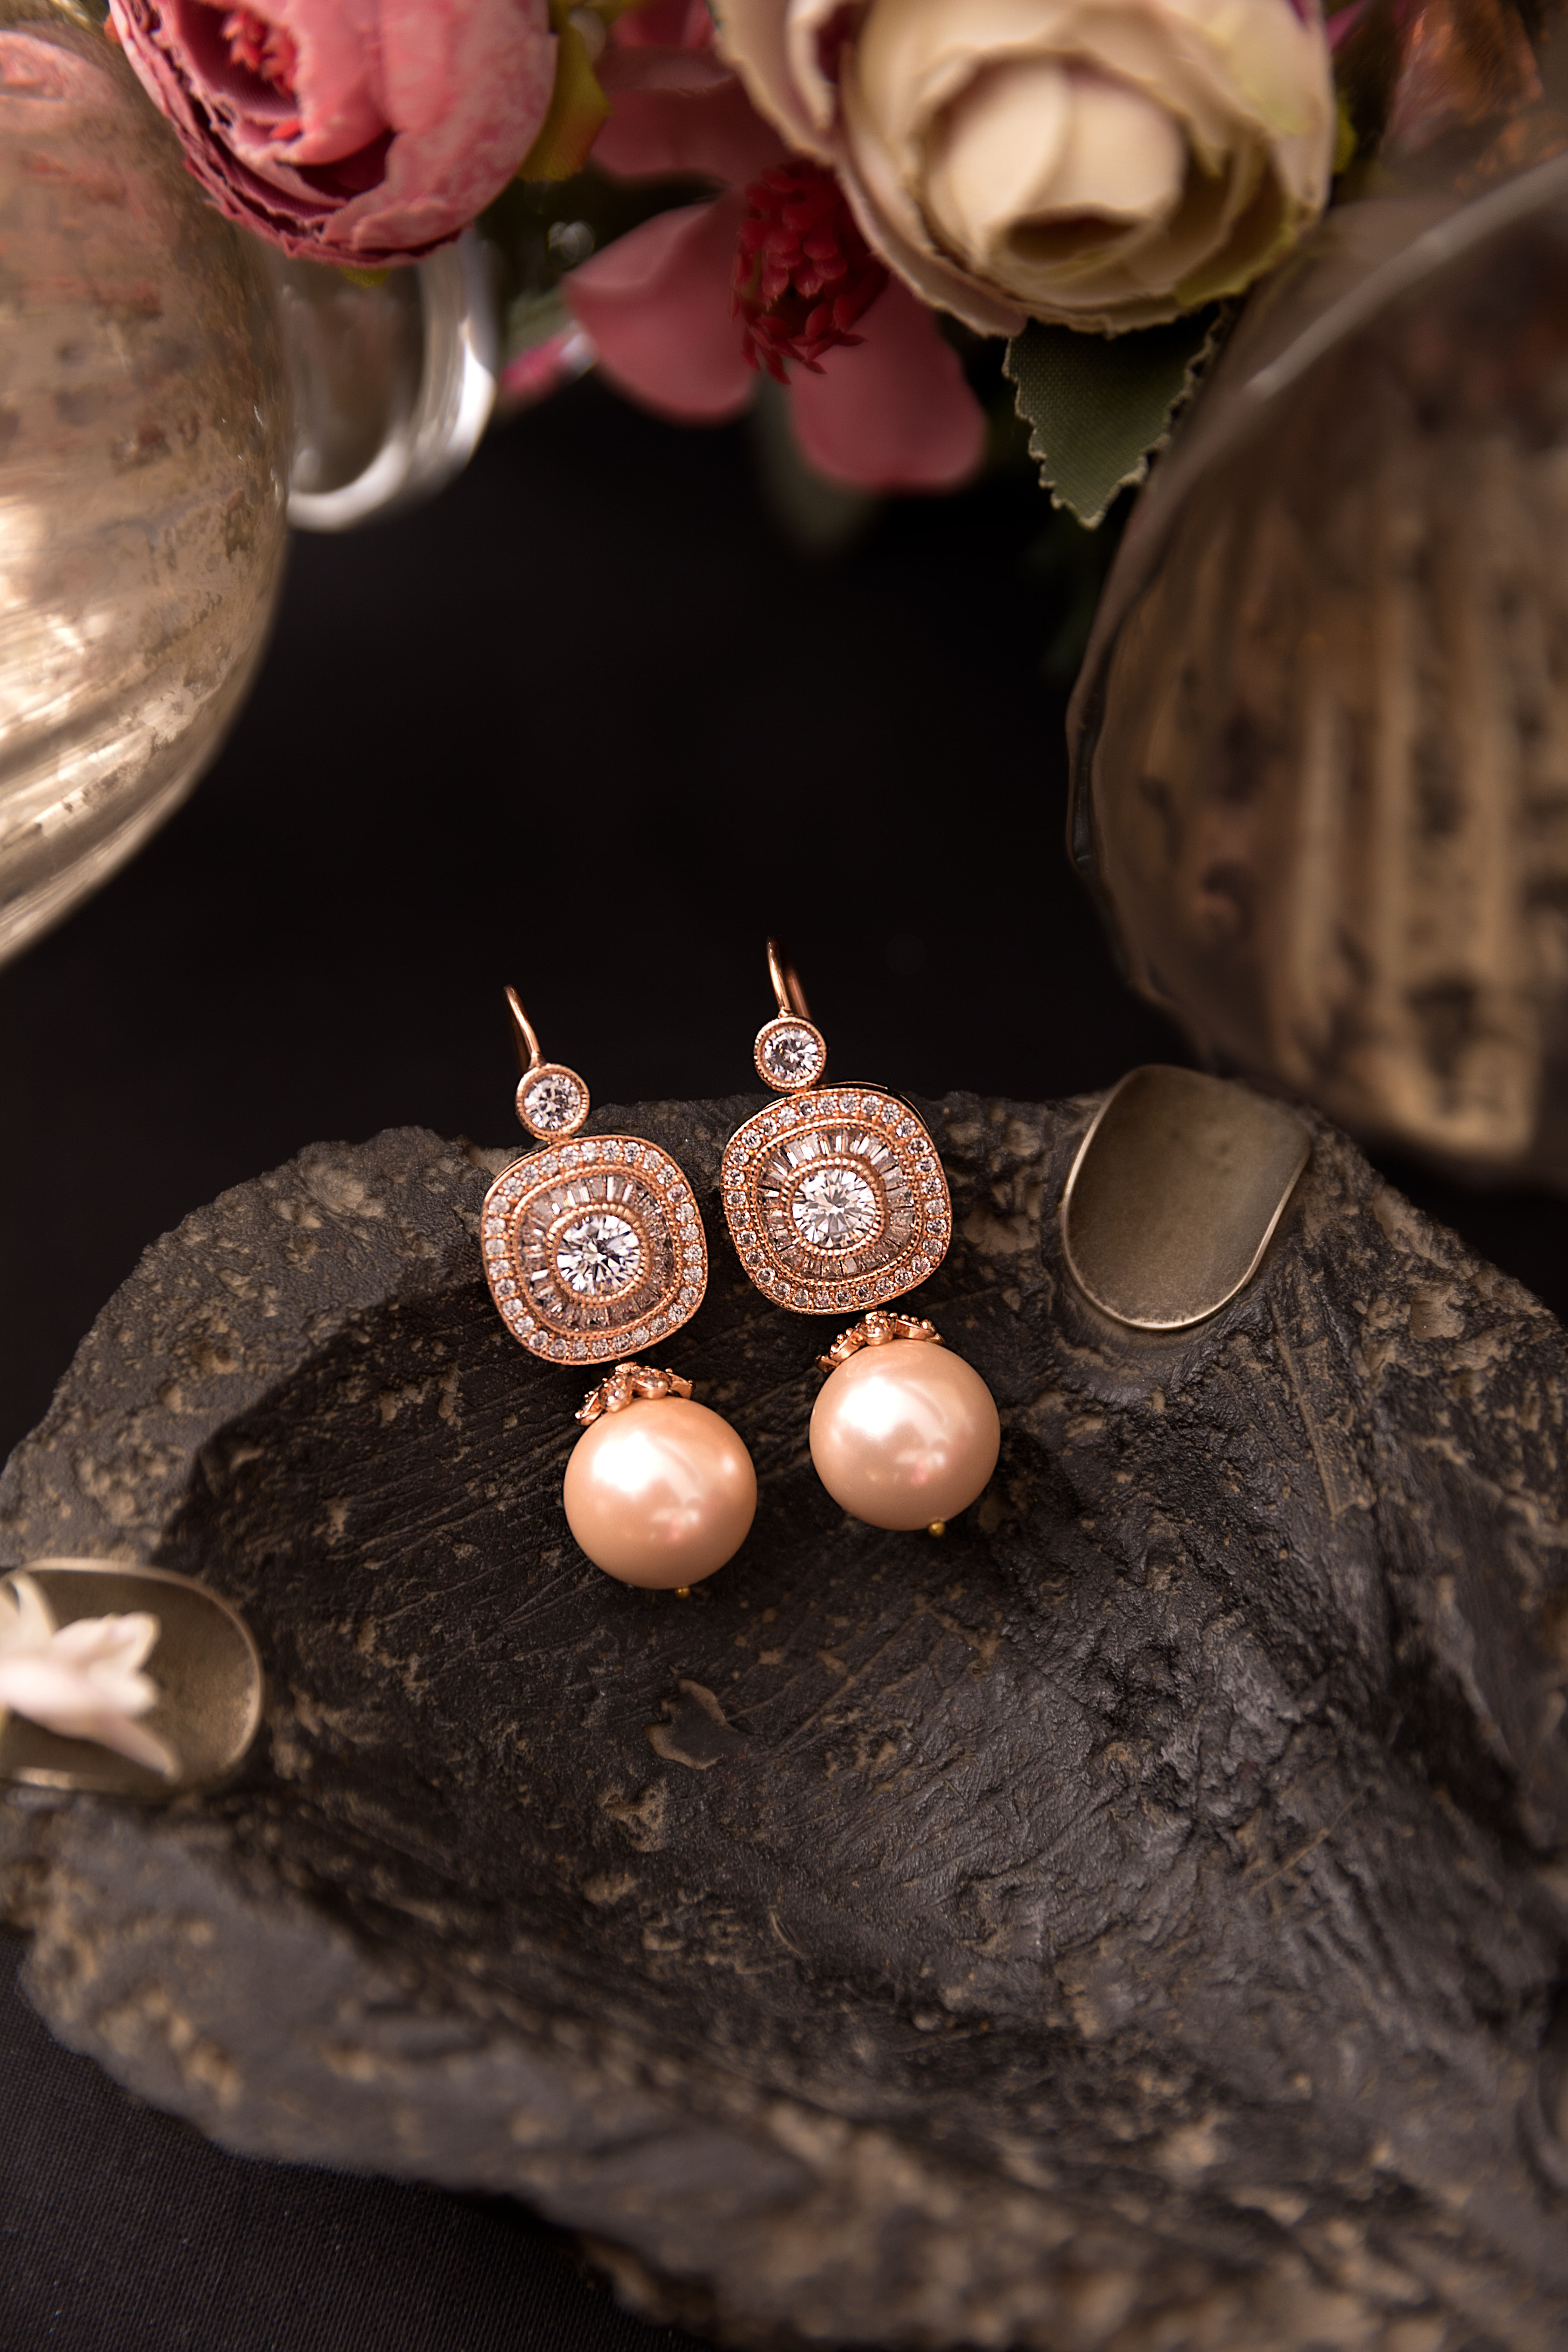 Buy Gold Flower Earrings, Flower Stud Earrings, Bridesmaid Earrings, Floral  Earrings, Bohemian Earrings, Wedding Earrings, Gift for Her Online in India  - Etsy